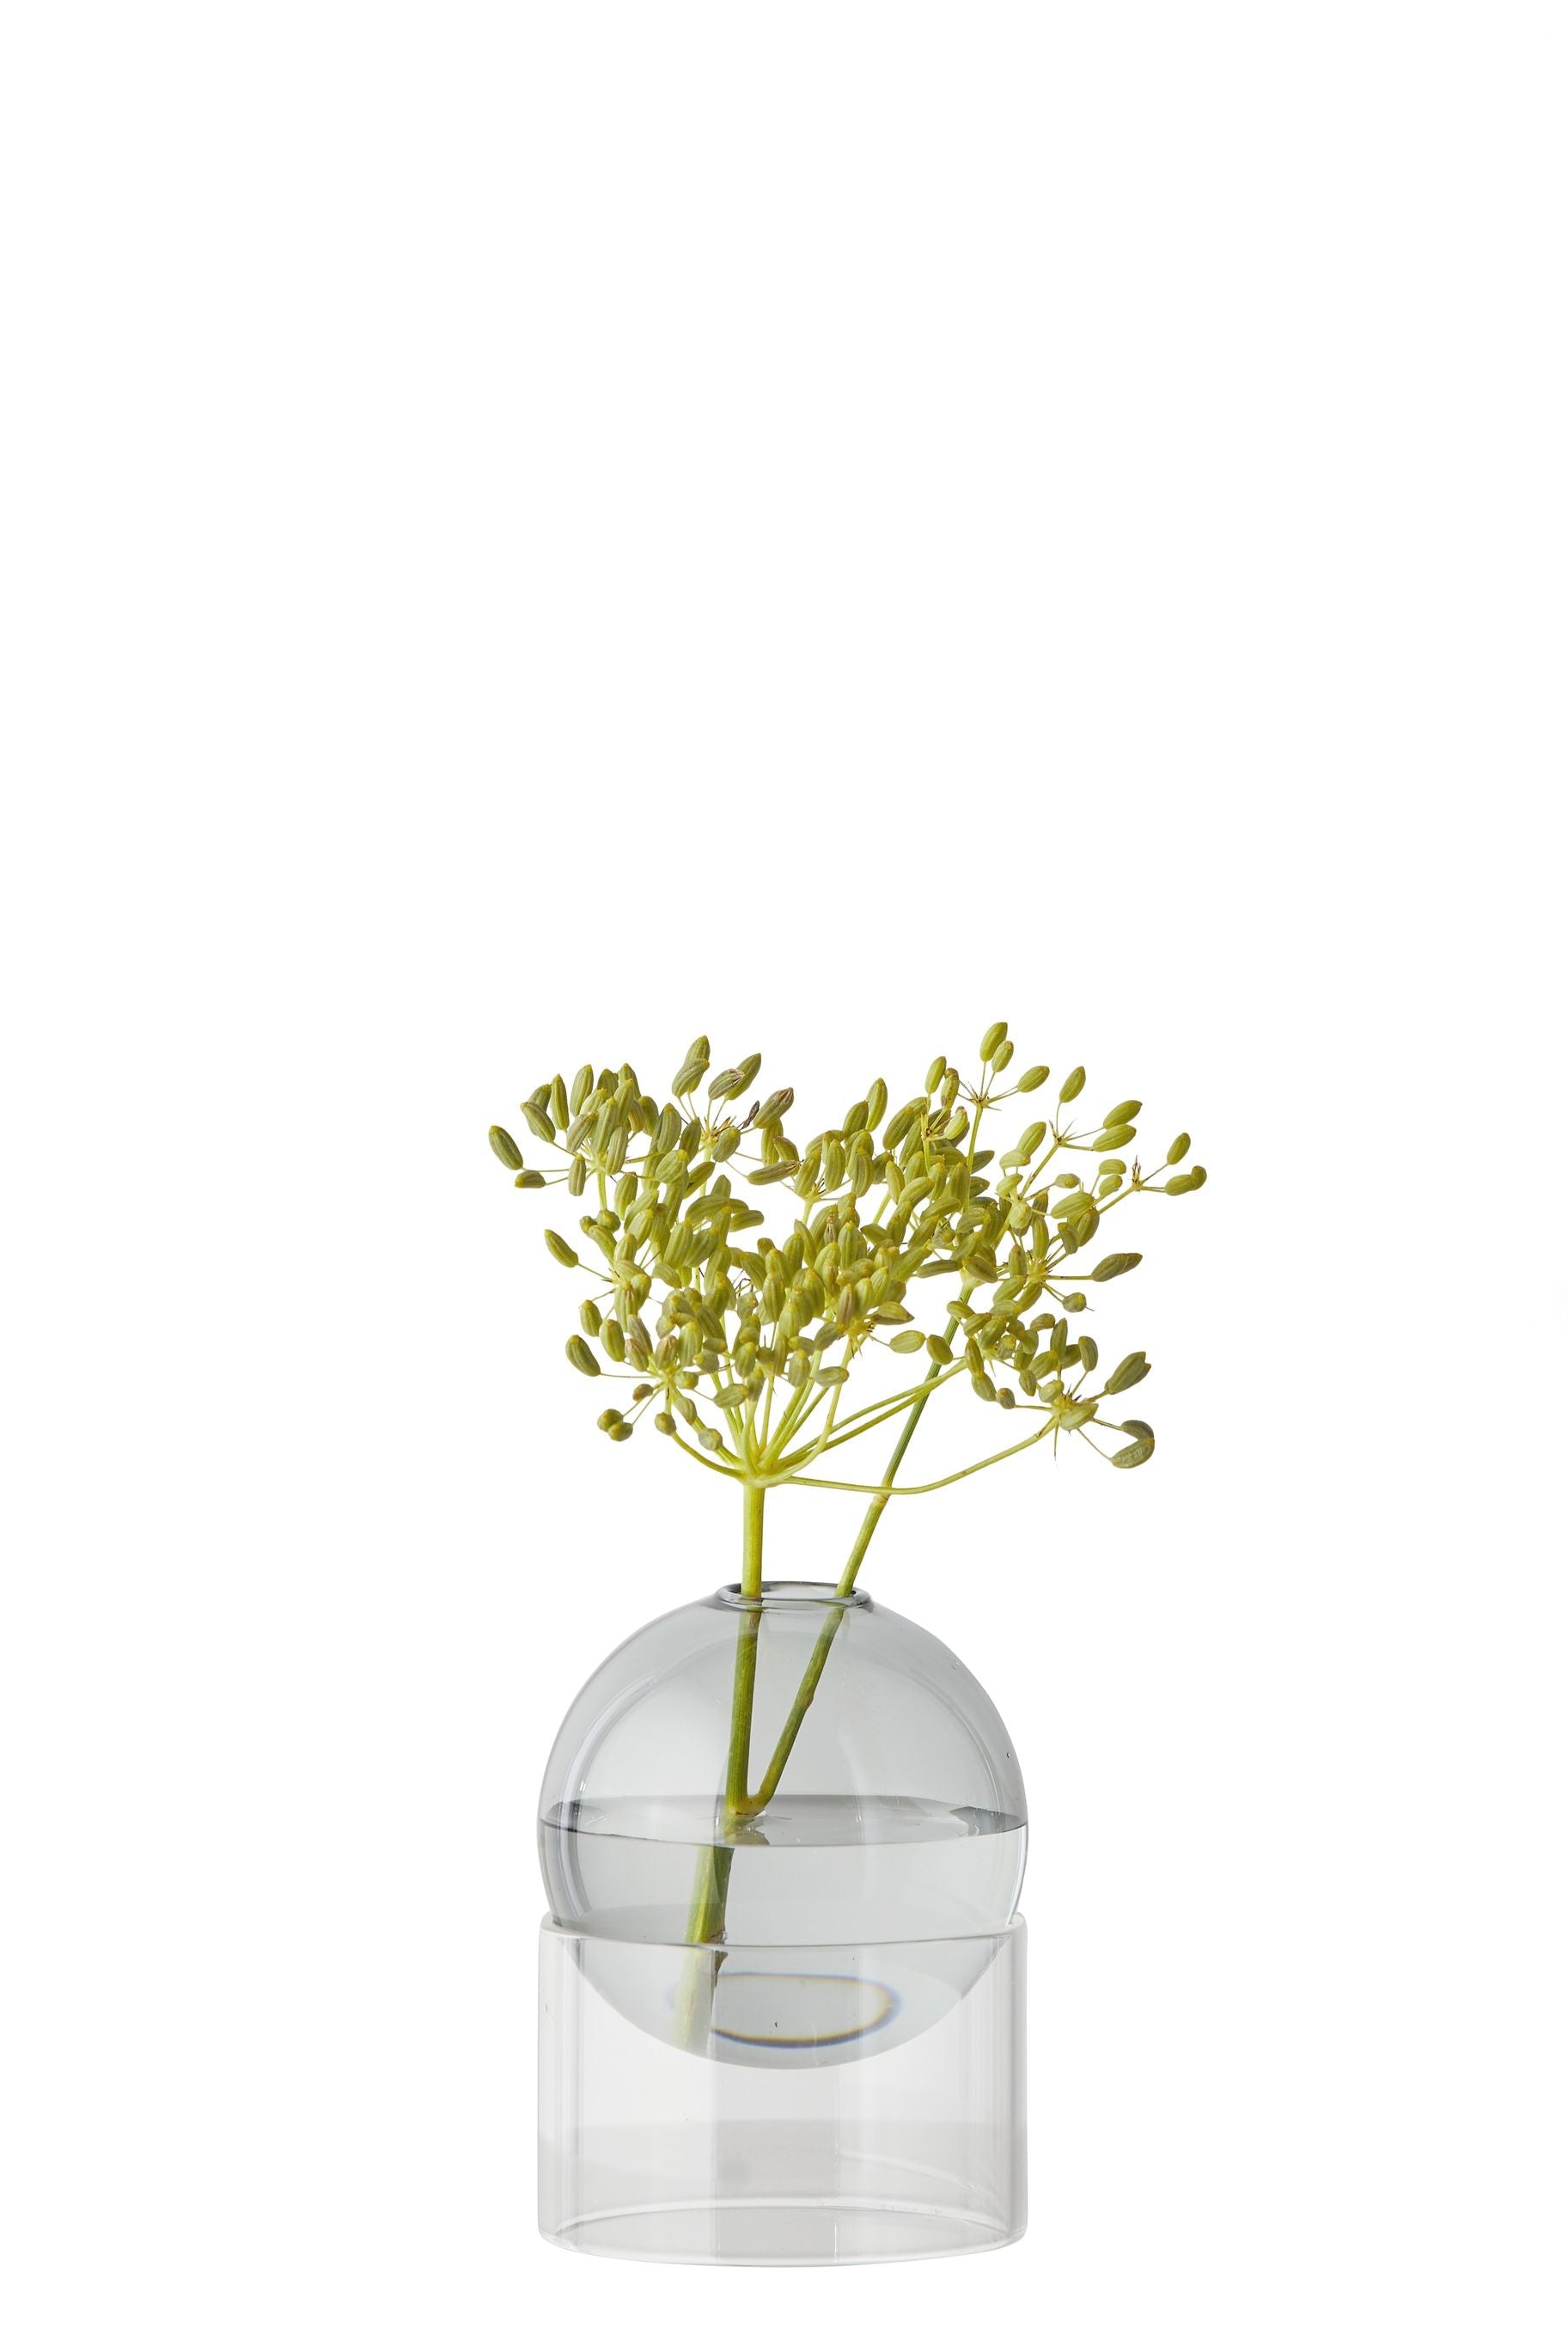 Studio sur le vase de bulles de fleur debout 10 cm, fumée